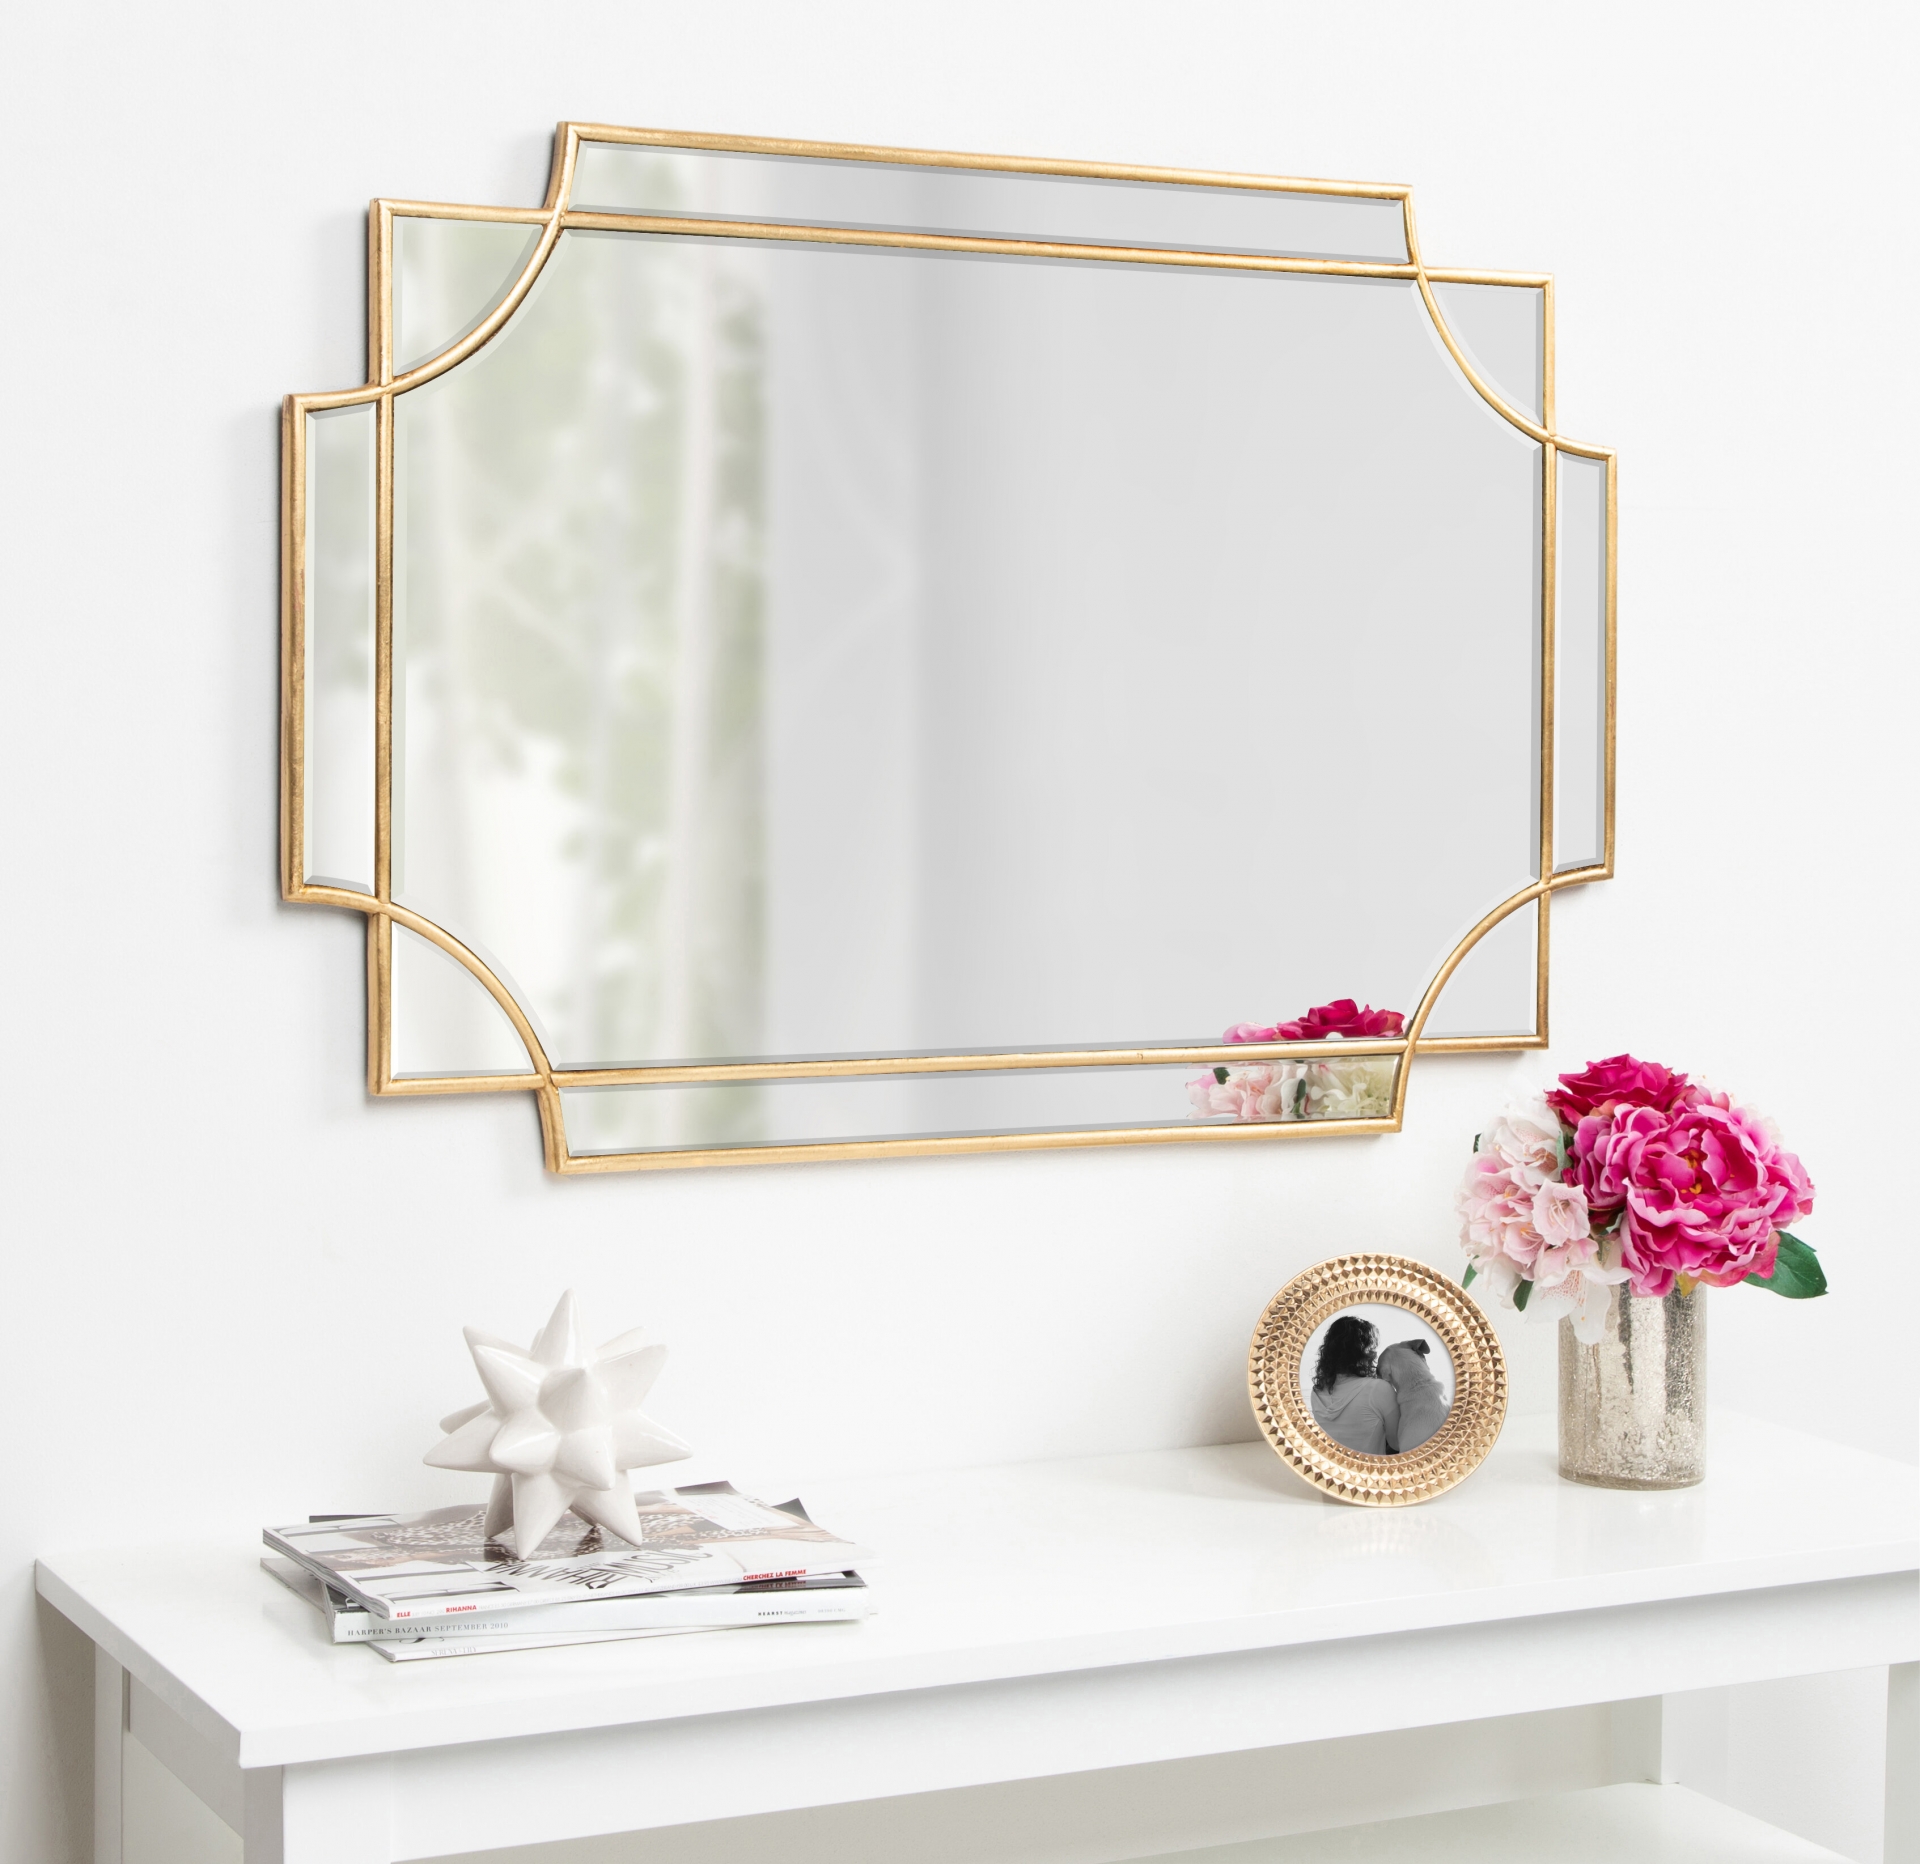 Phần khung 2 chi tiết mạ vàng mang đến cảm giác như có 2 tấm gương được lồng ghép vào nhau, kết hợp với khung ảnh trên bàn càng làm tăng thêm phần quyến rũ.